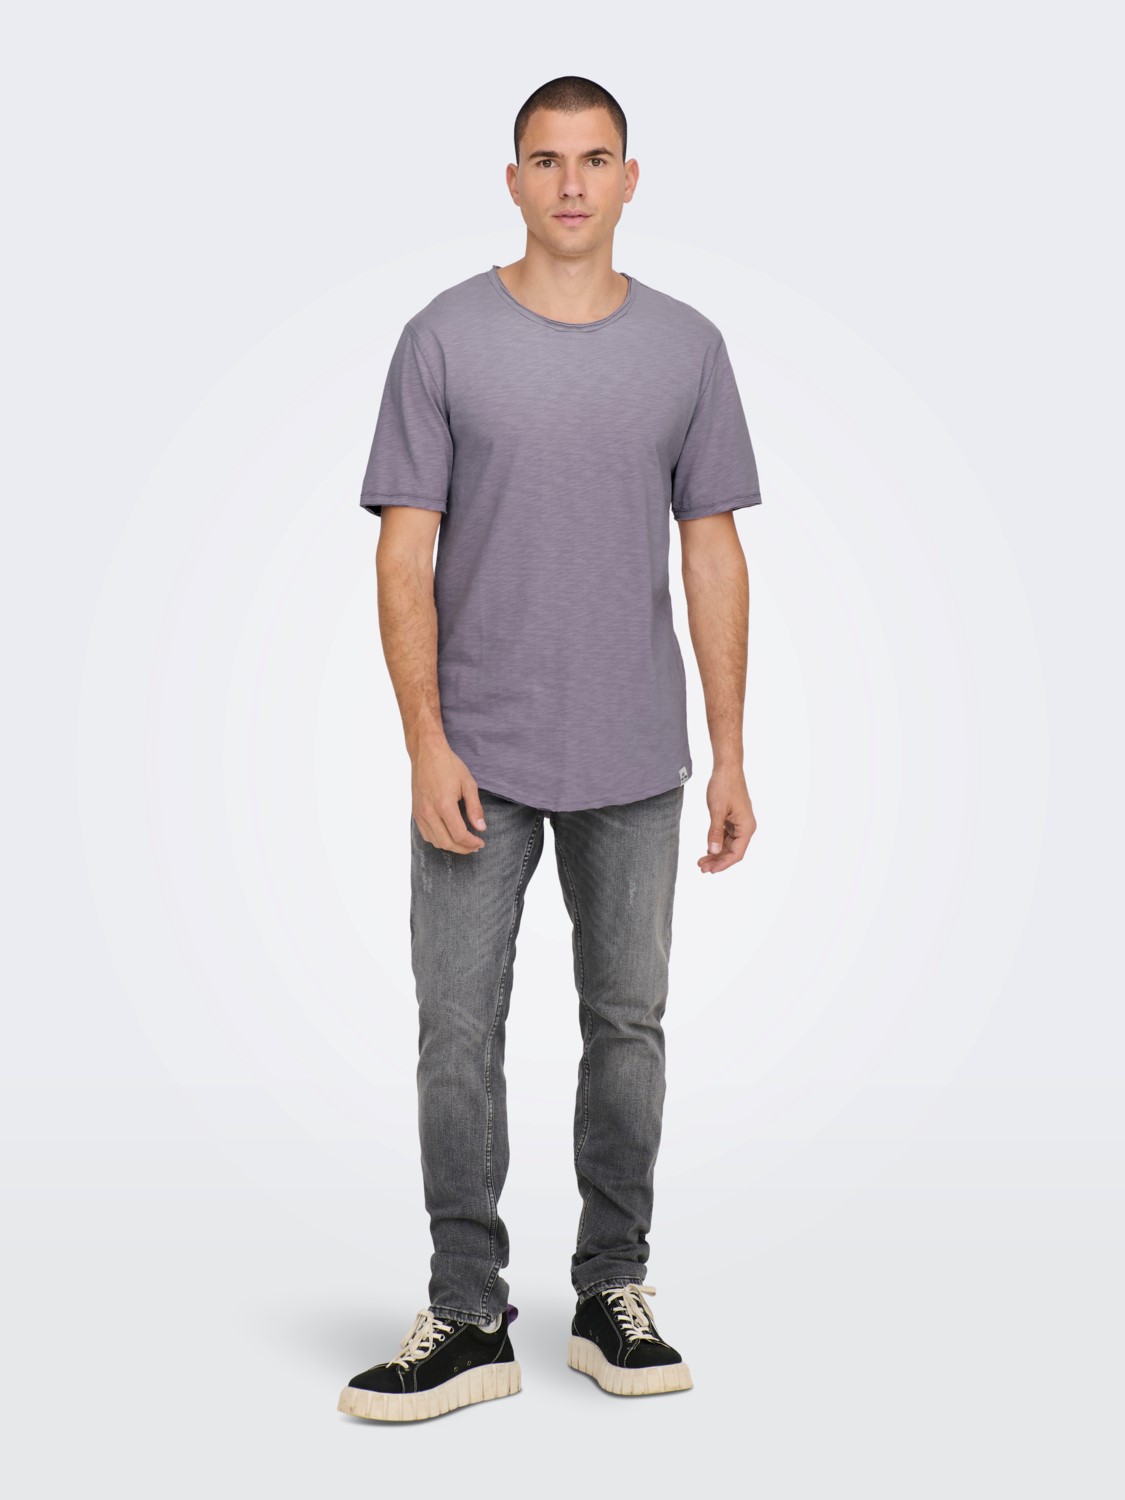 Se Benne Long Line Fit T-Shirt S/S - Purple Ash Medium hos monomen